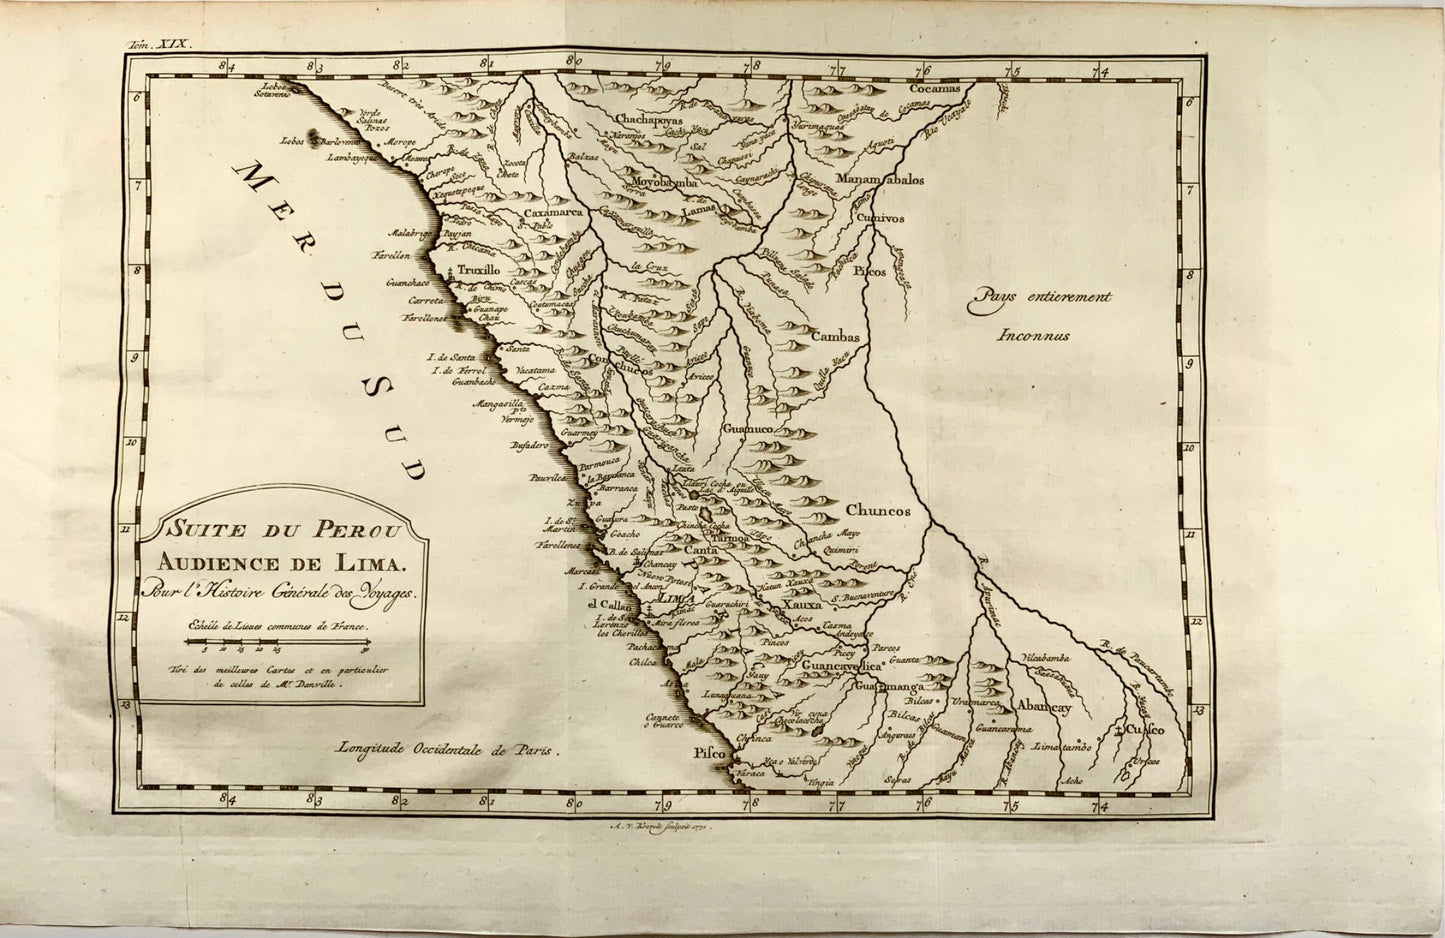 1756 Carte d'Anville de la côte du Pérou par Bellin, incluant Lima